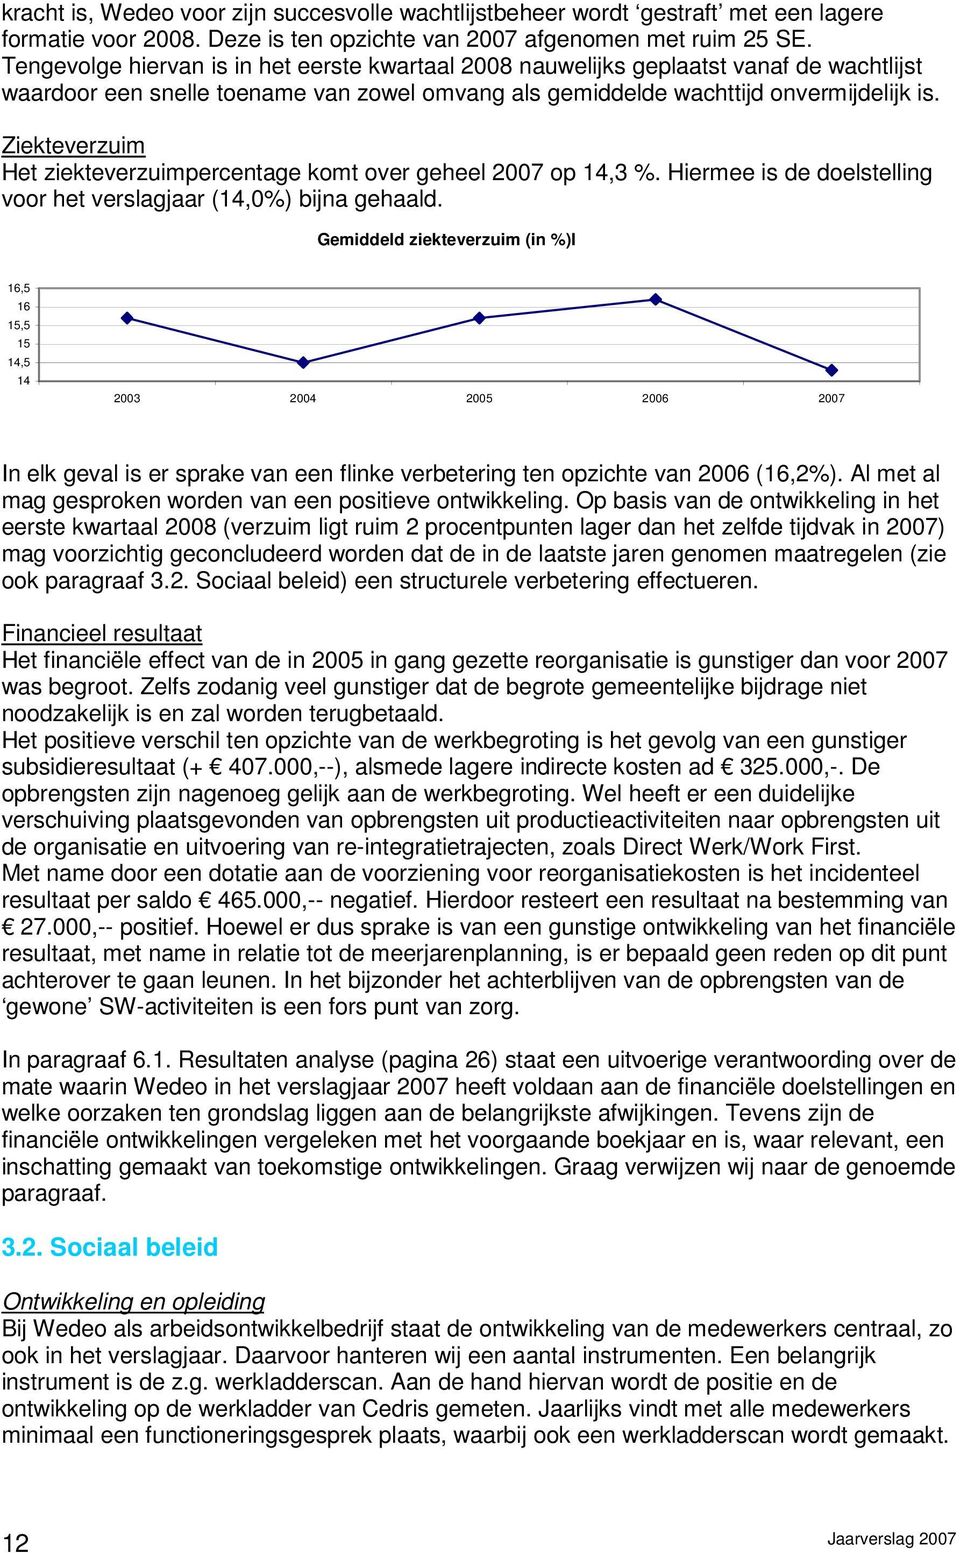 Ziekteverzuim Het ziekteverzuimpercentage komt over geheel 2007 op 14,3 %. Hiermee is de doelstelling voor het verslagjaar (14,0%) bijna gehaald.